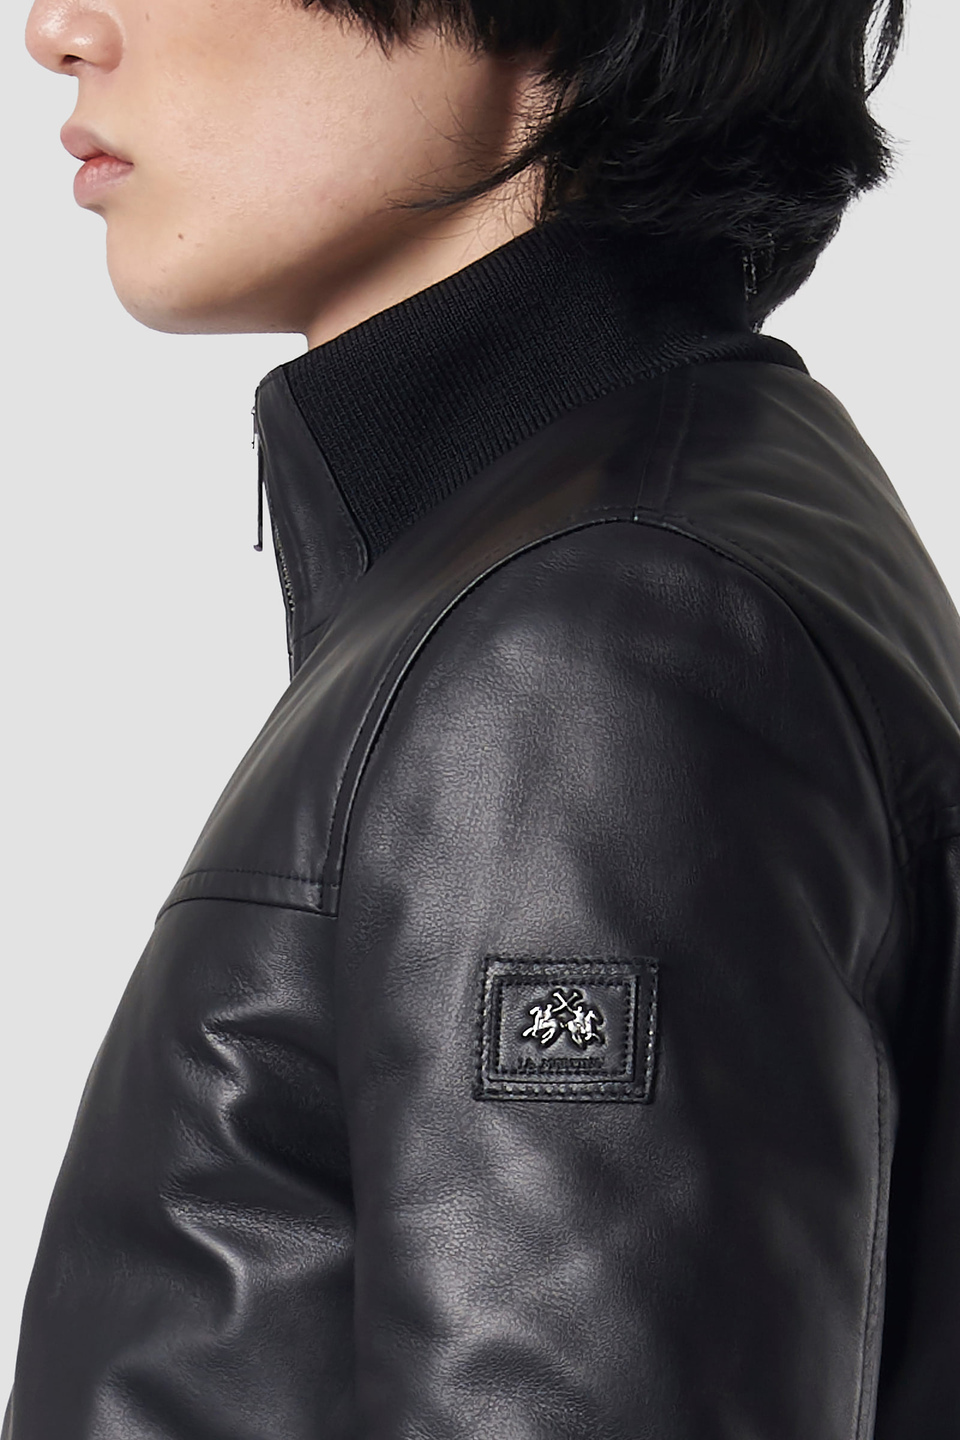 Insert-embellished leather jacket - La Martina - Official Online Shop